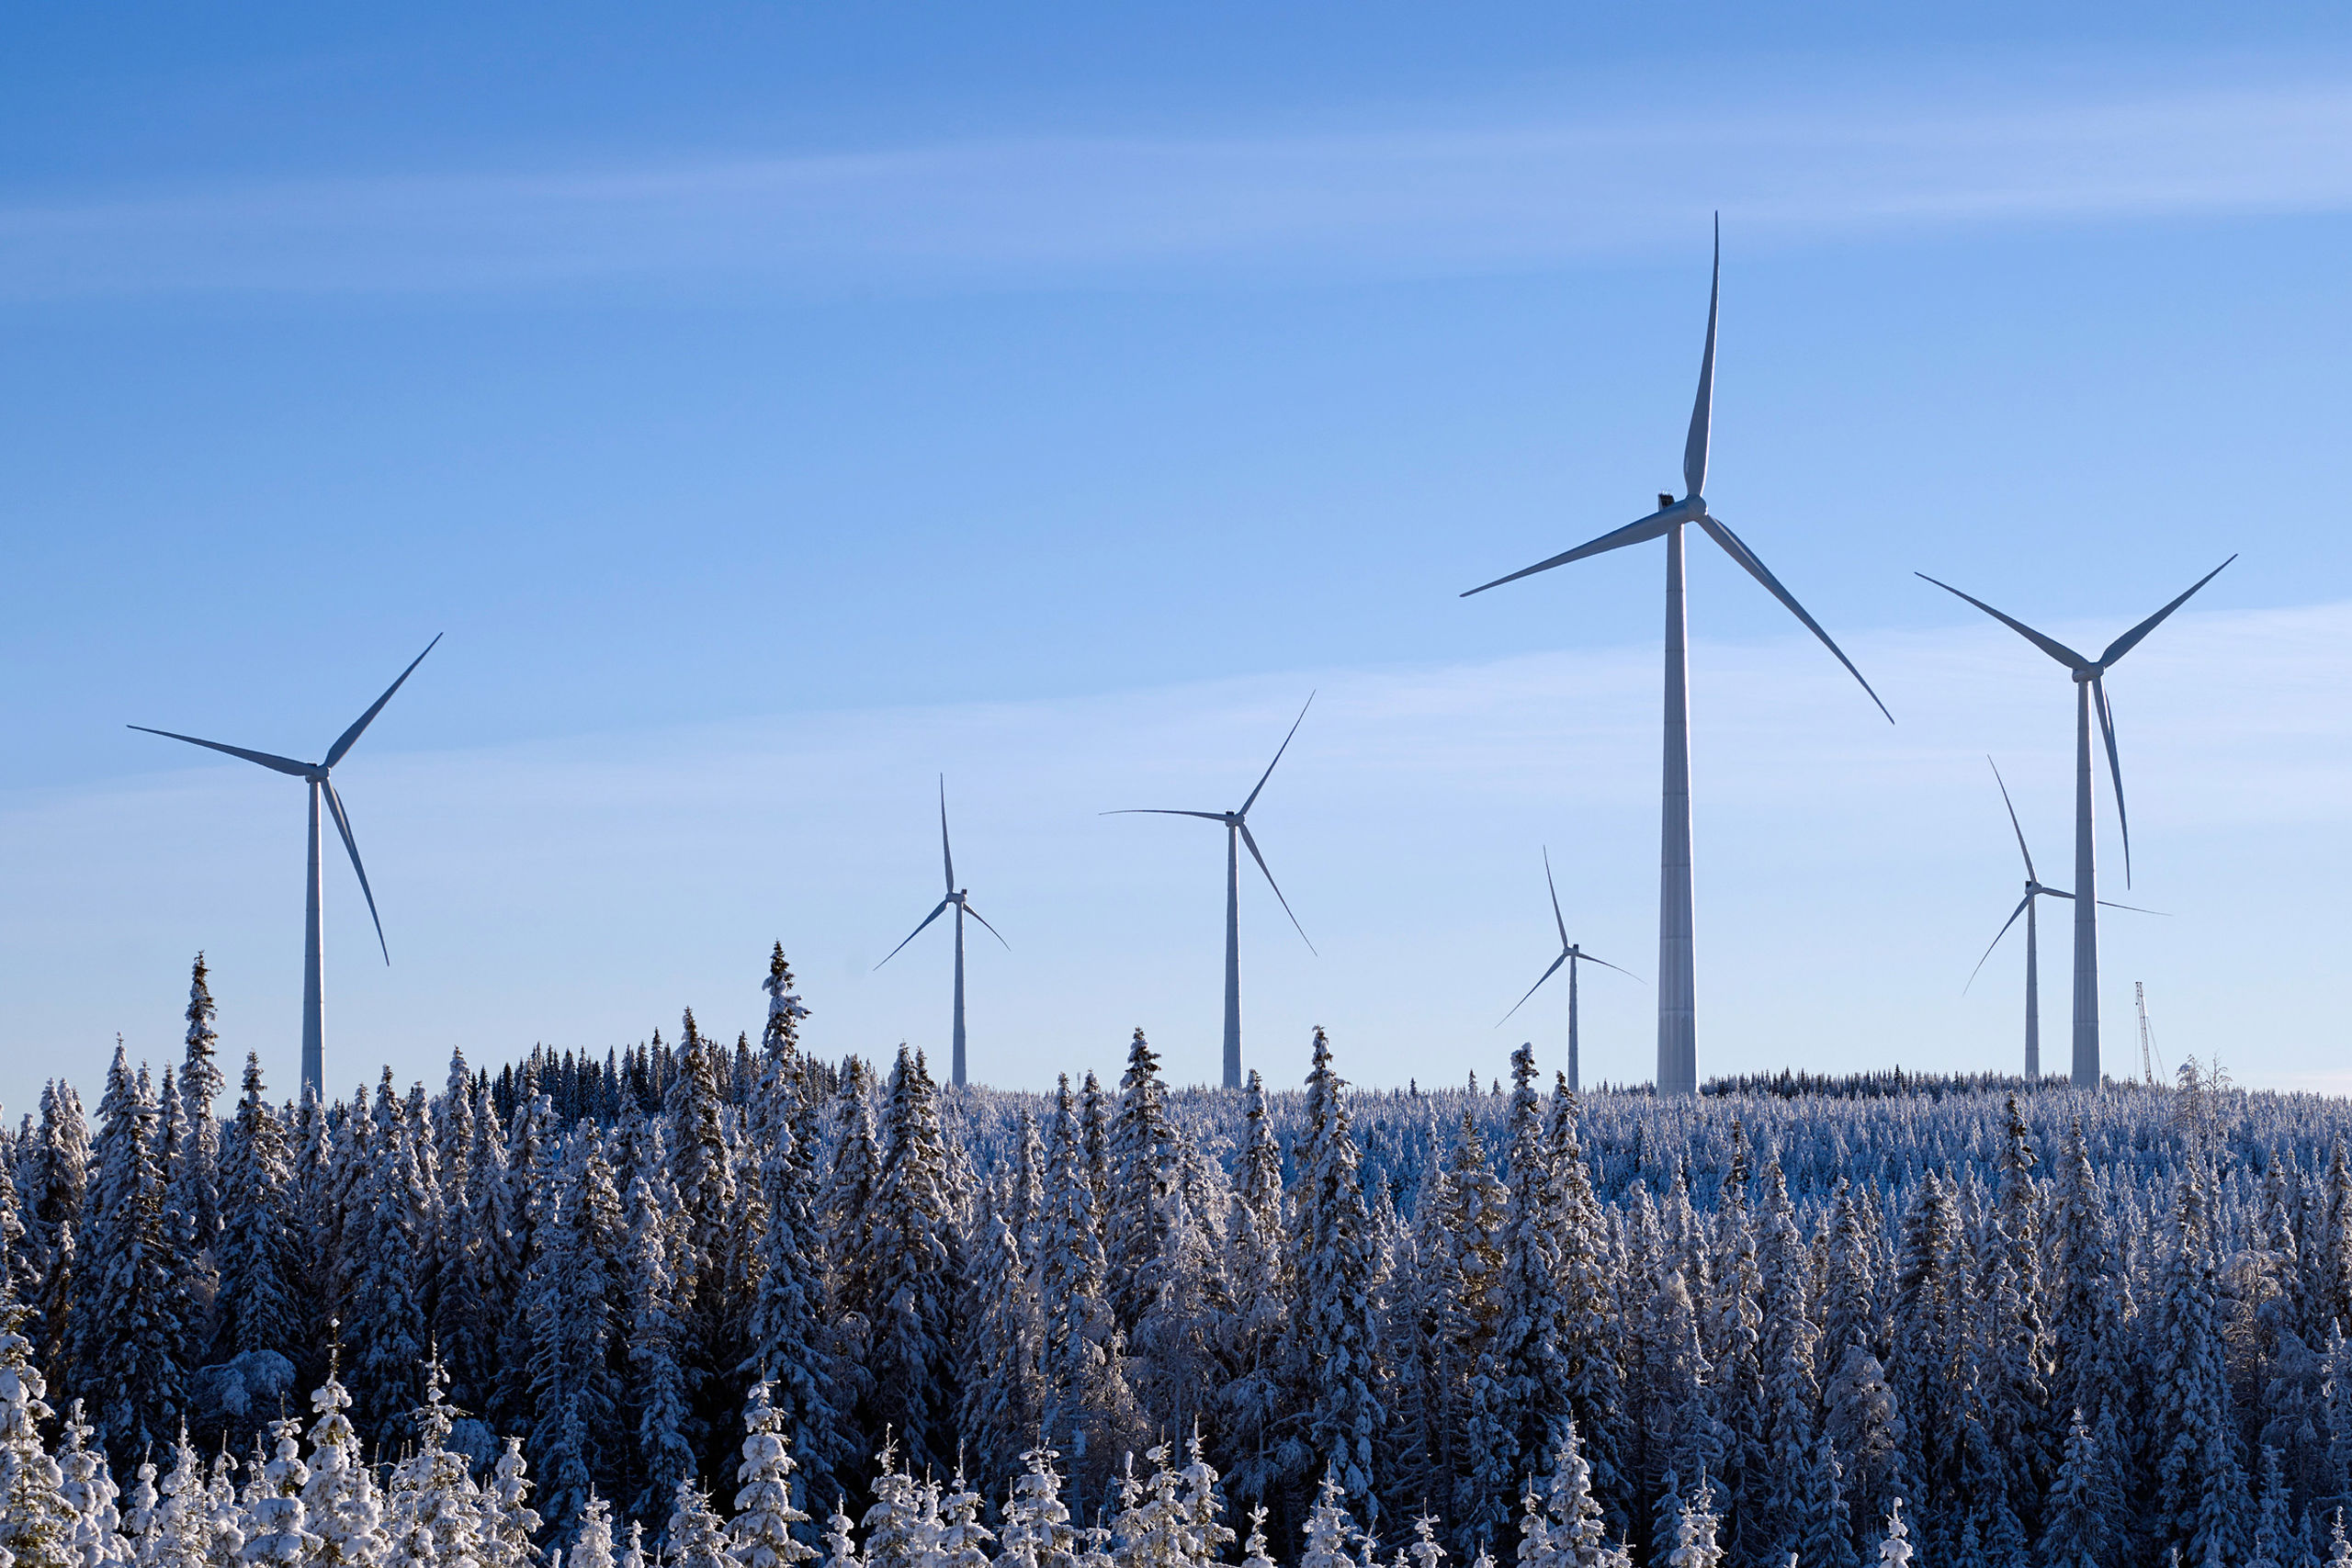 Stamåsen wind farm in Sweden